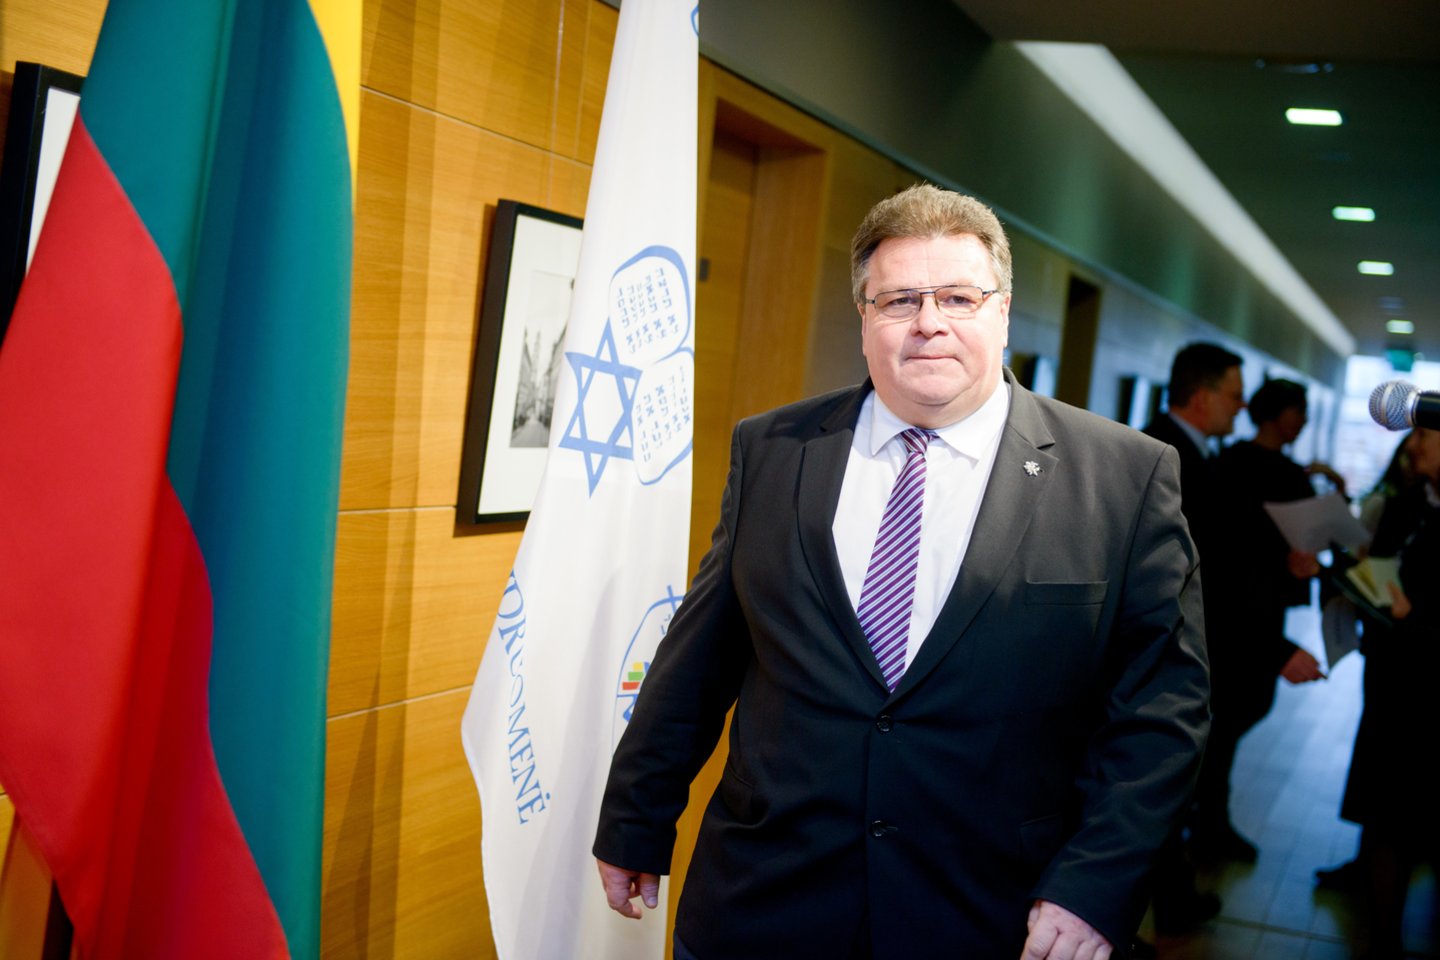 Užsienio reikalų ministras Linas Linkevičius tiki, kad Rusija bandys kištis į artėjančius rinkimus Lietuvoje. <br>J.Stacevičiaus nuotr.